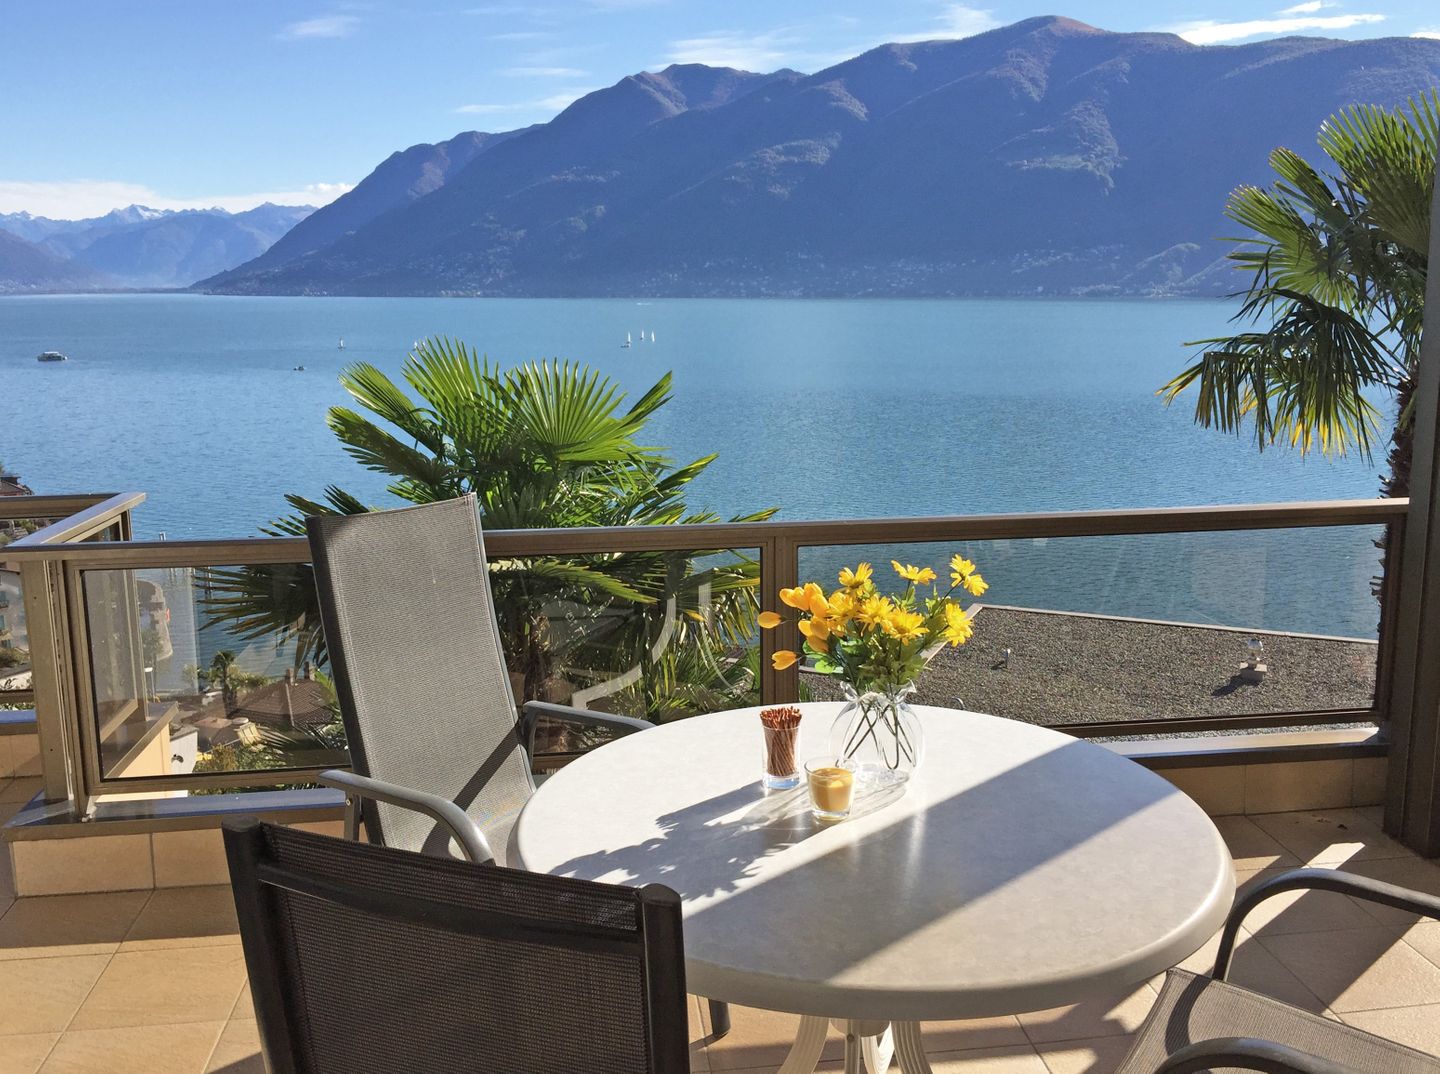 Ferienappartement mit fantastischem Seeblick  in der Schweiz